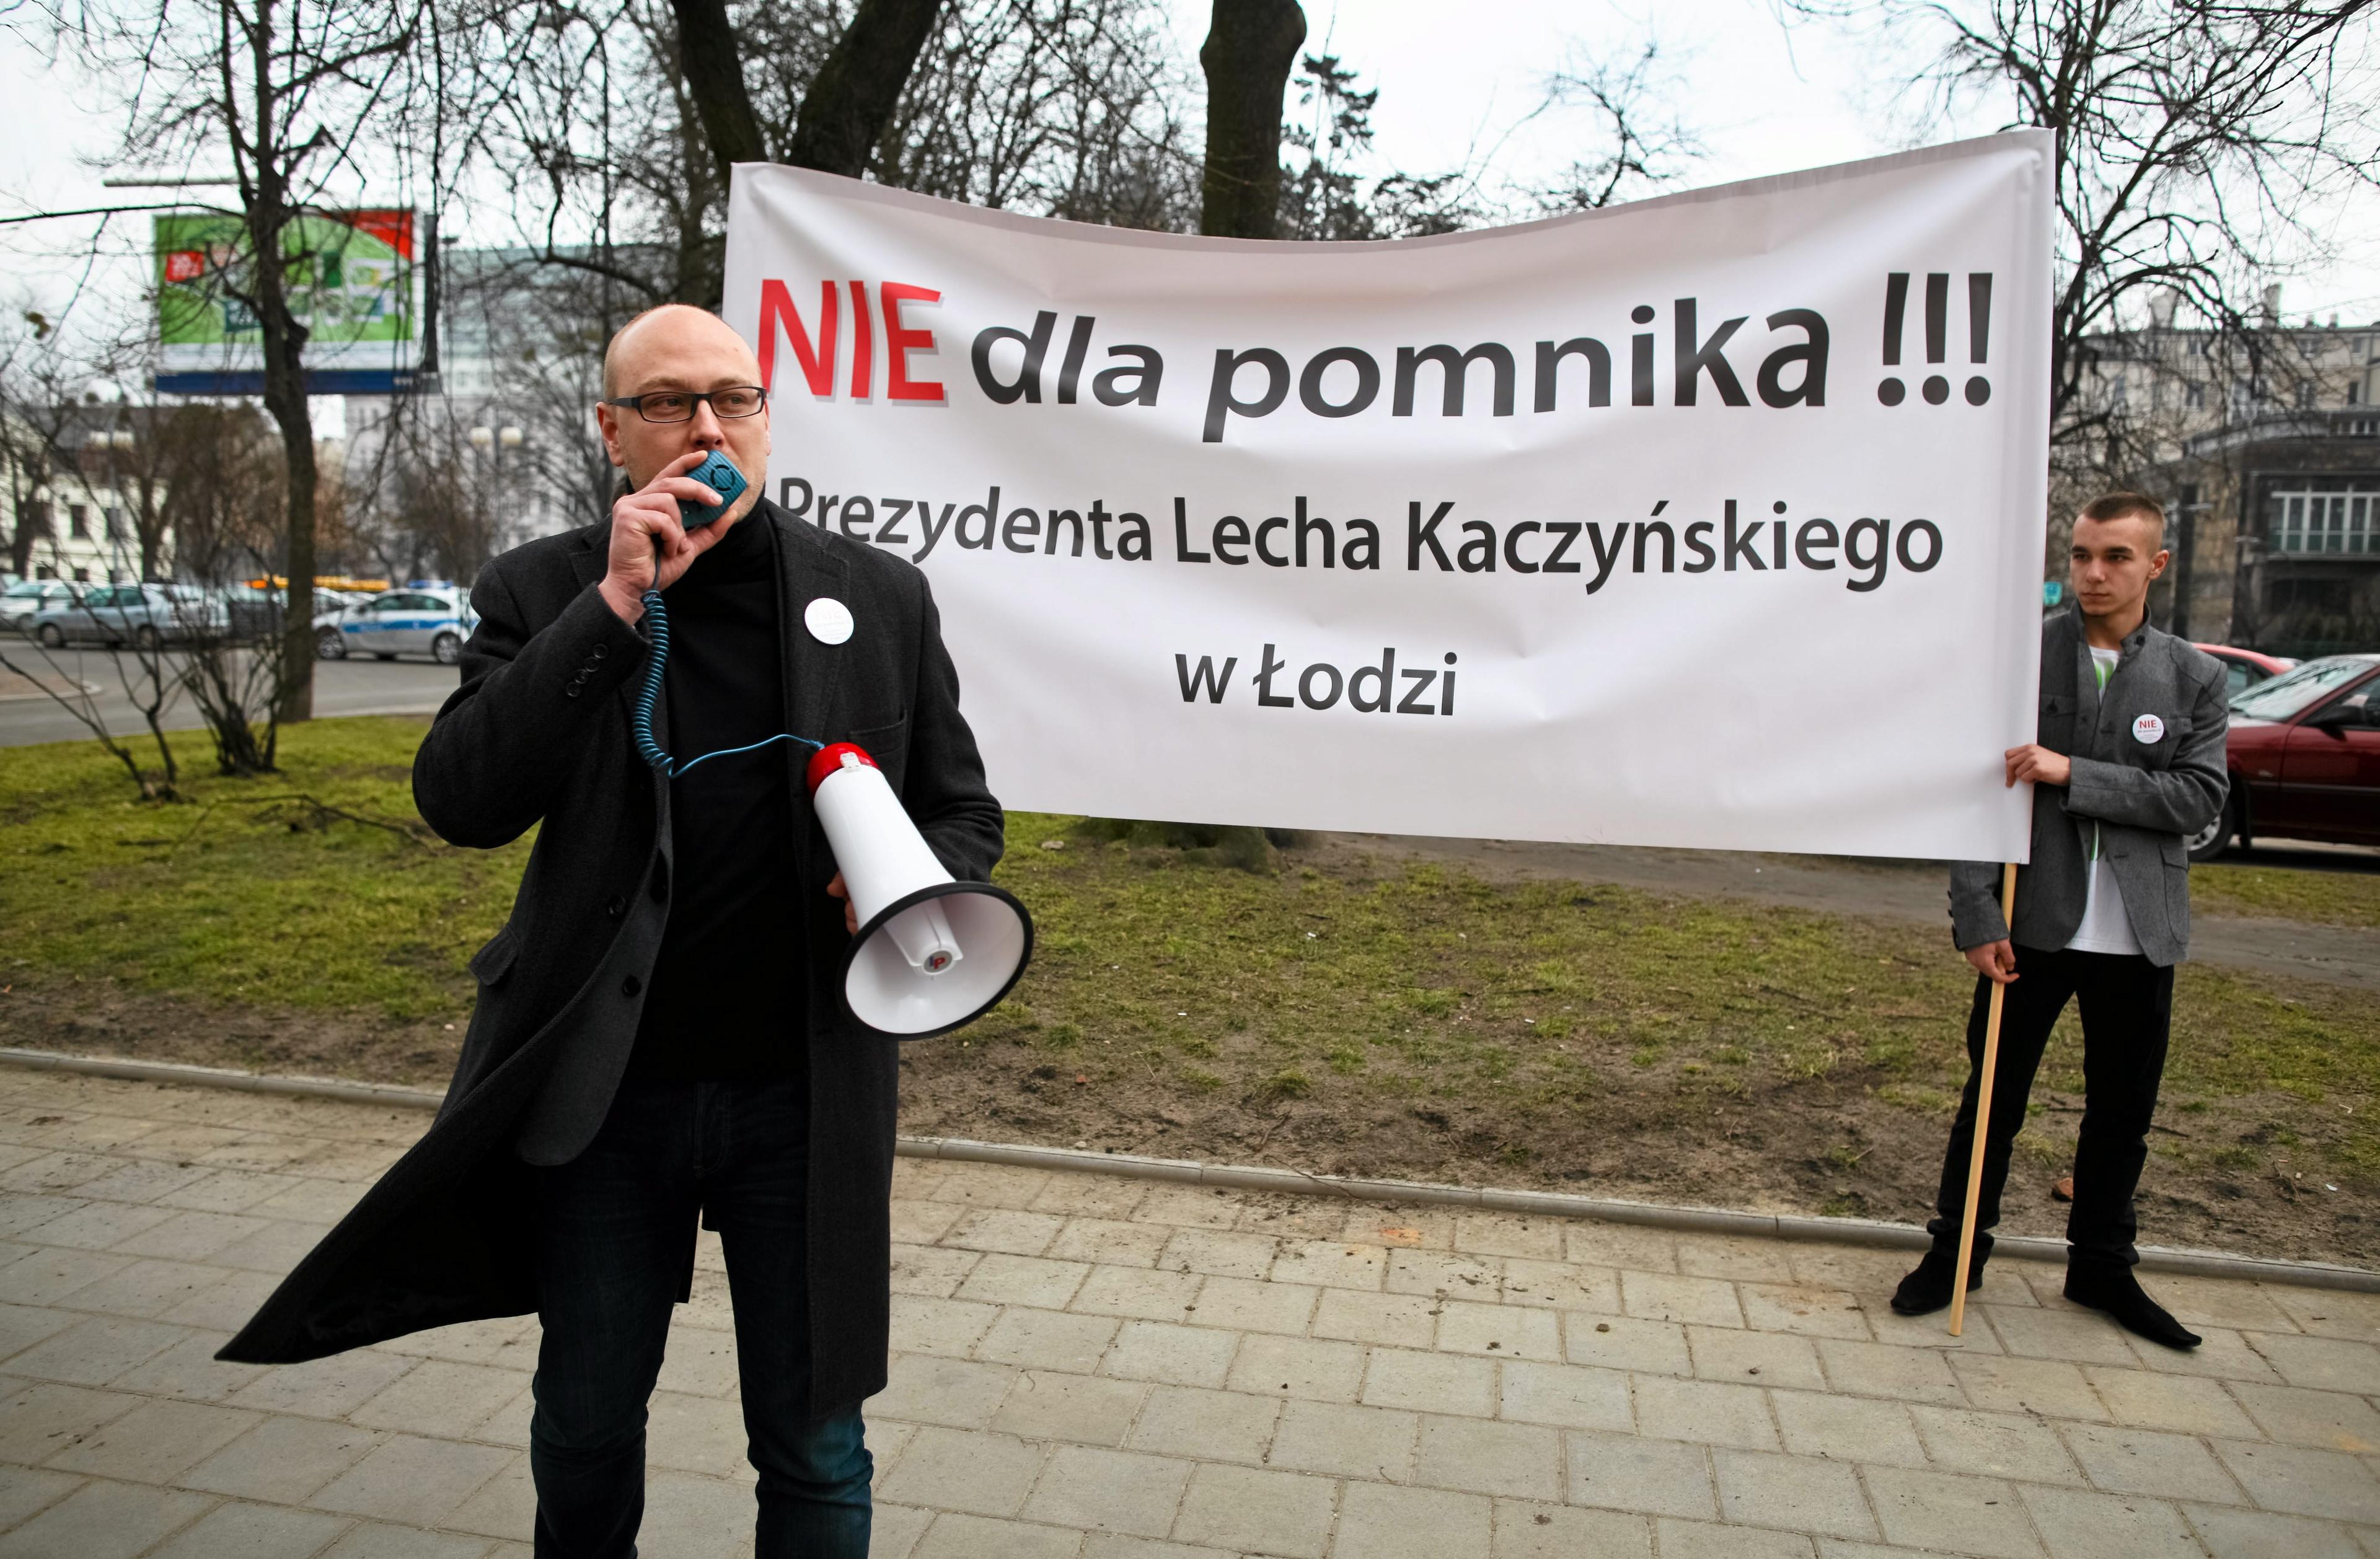 22.02.2014 Lodz , plac Komuny Paryskiej . Protest mieszkancow przeciwko budowie pomnika Lecha Kaczynskiego
Fot. Malgorzata Kujawka / Agencja Gazeta